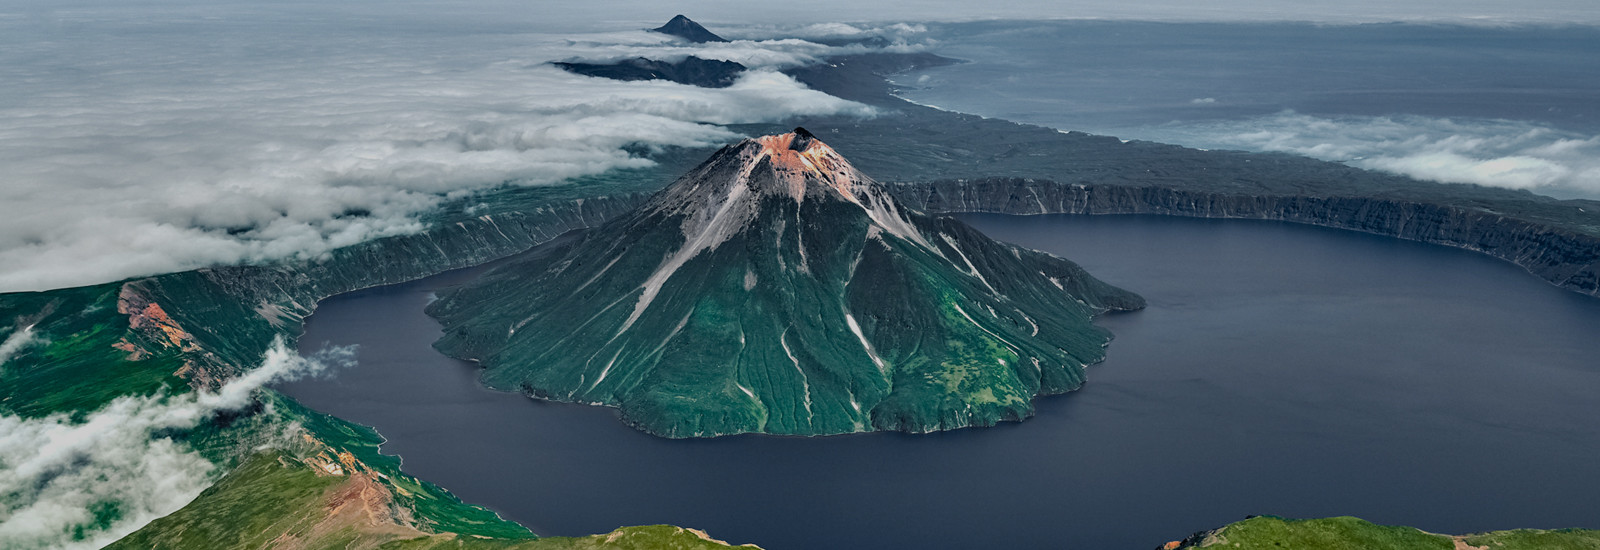 The Islands of Volcanoes